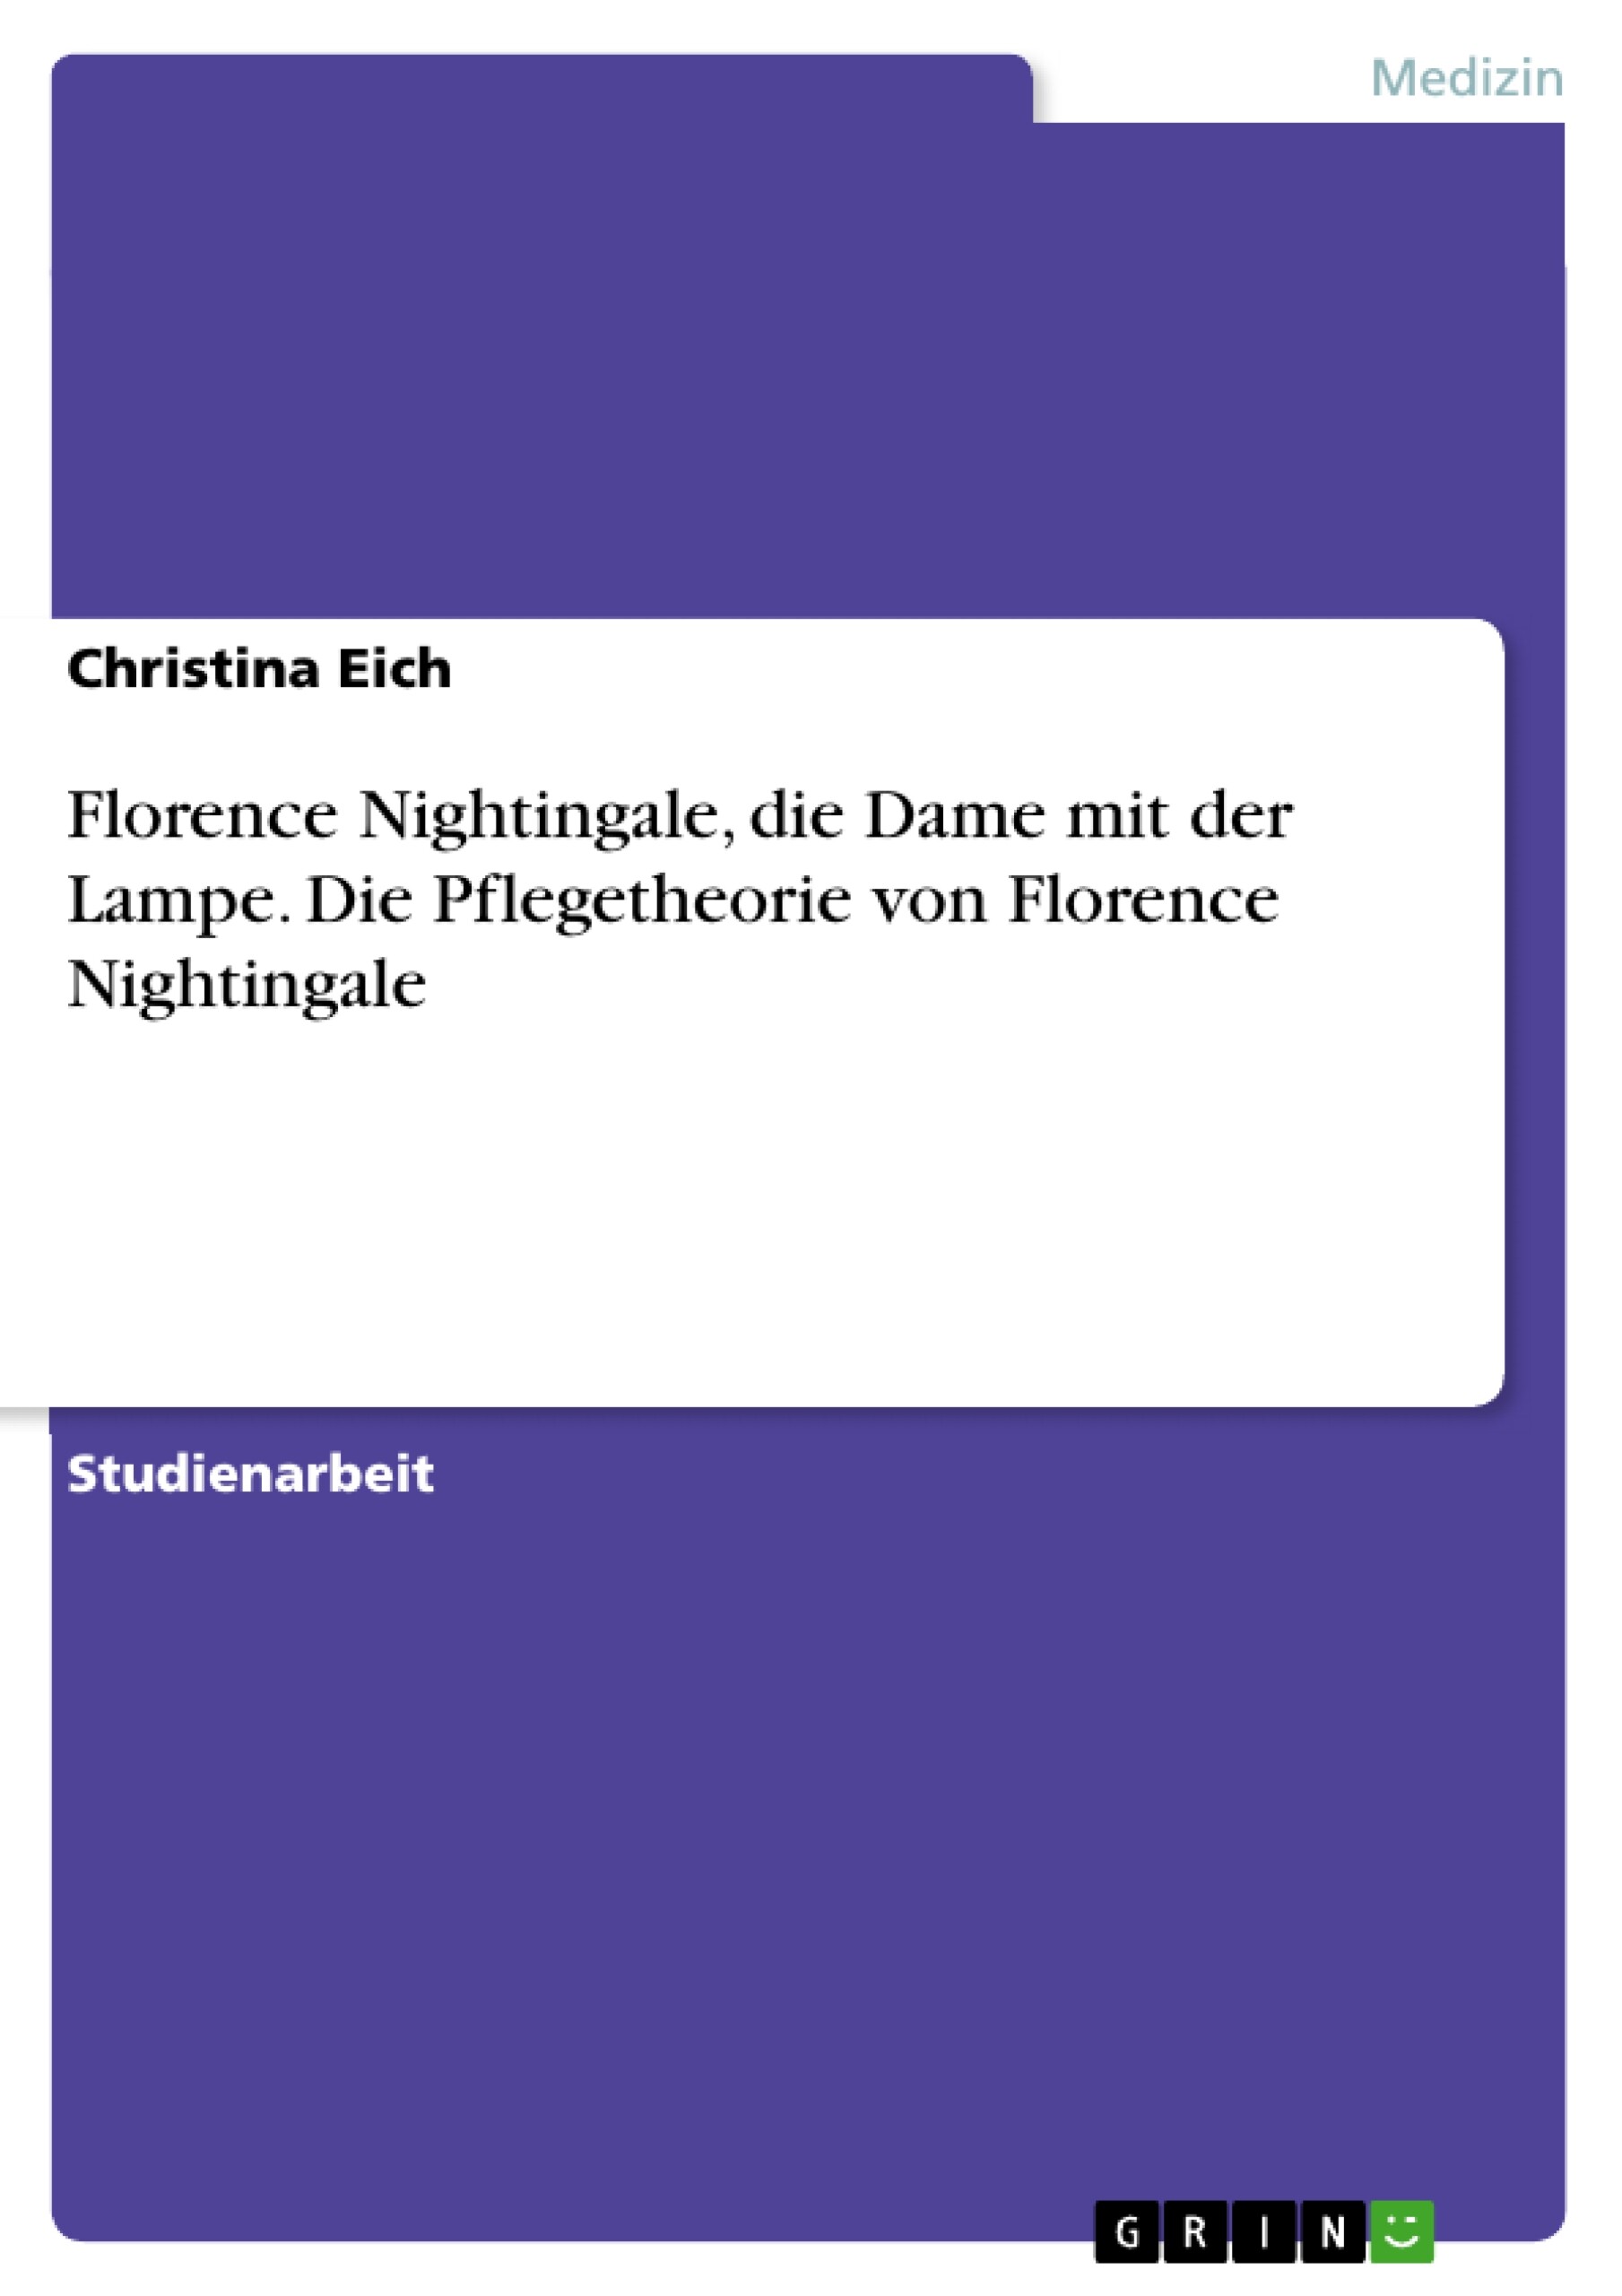 Florence Nightingale, die Dame mit der Lampe. Die Pflegetheorie von Florence Nightingale